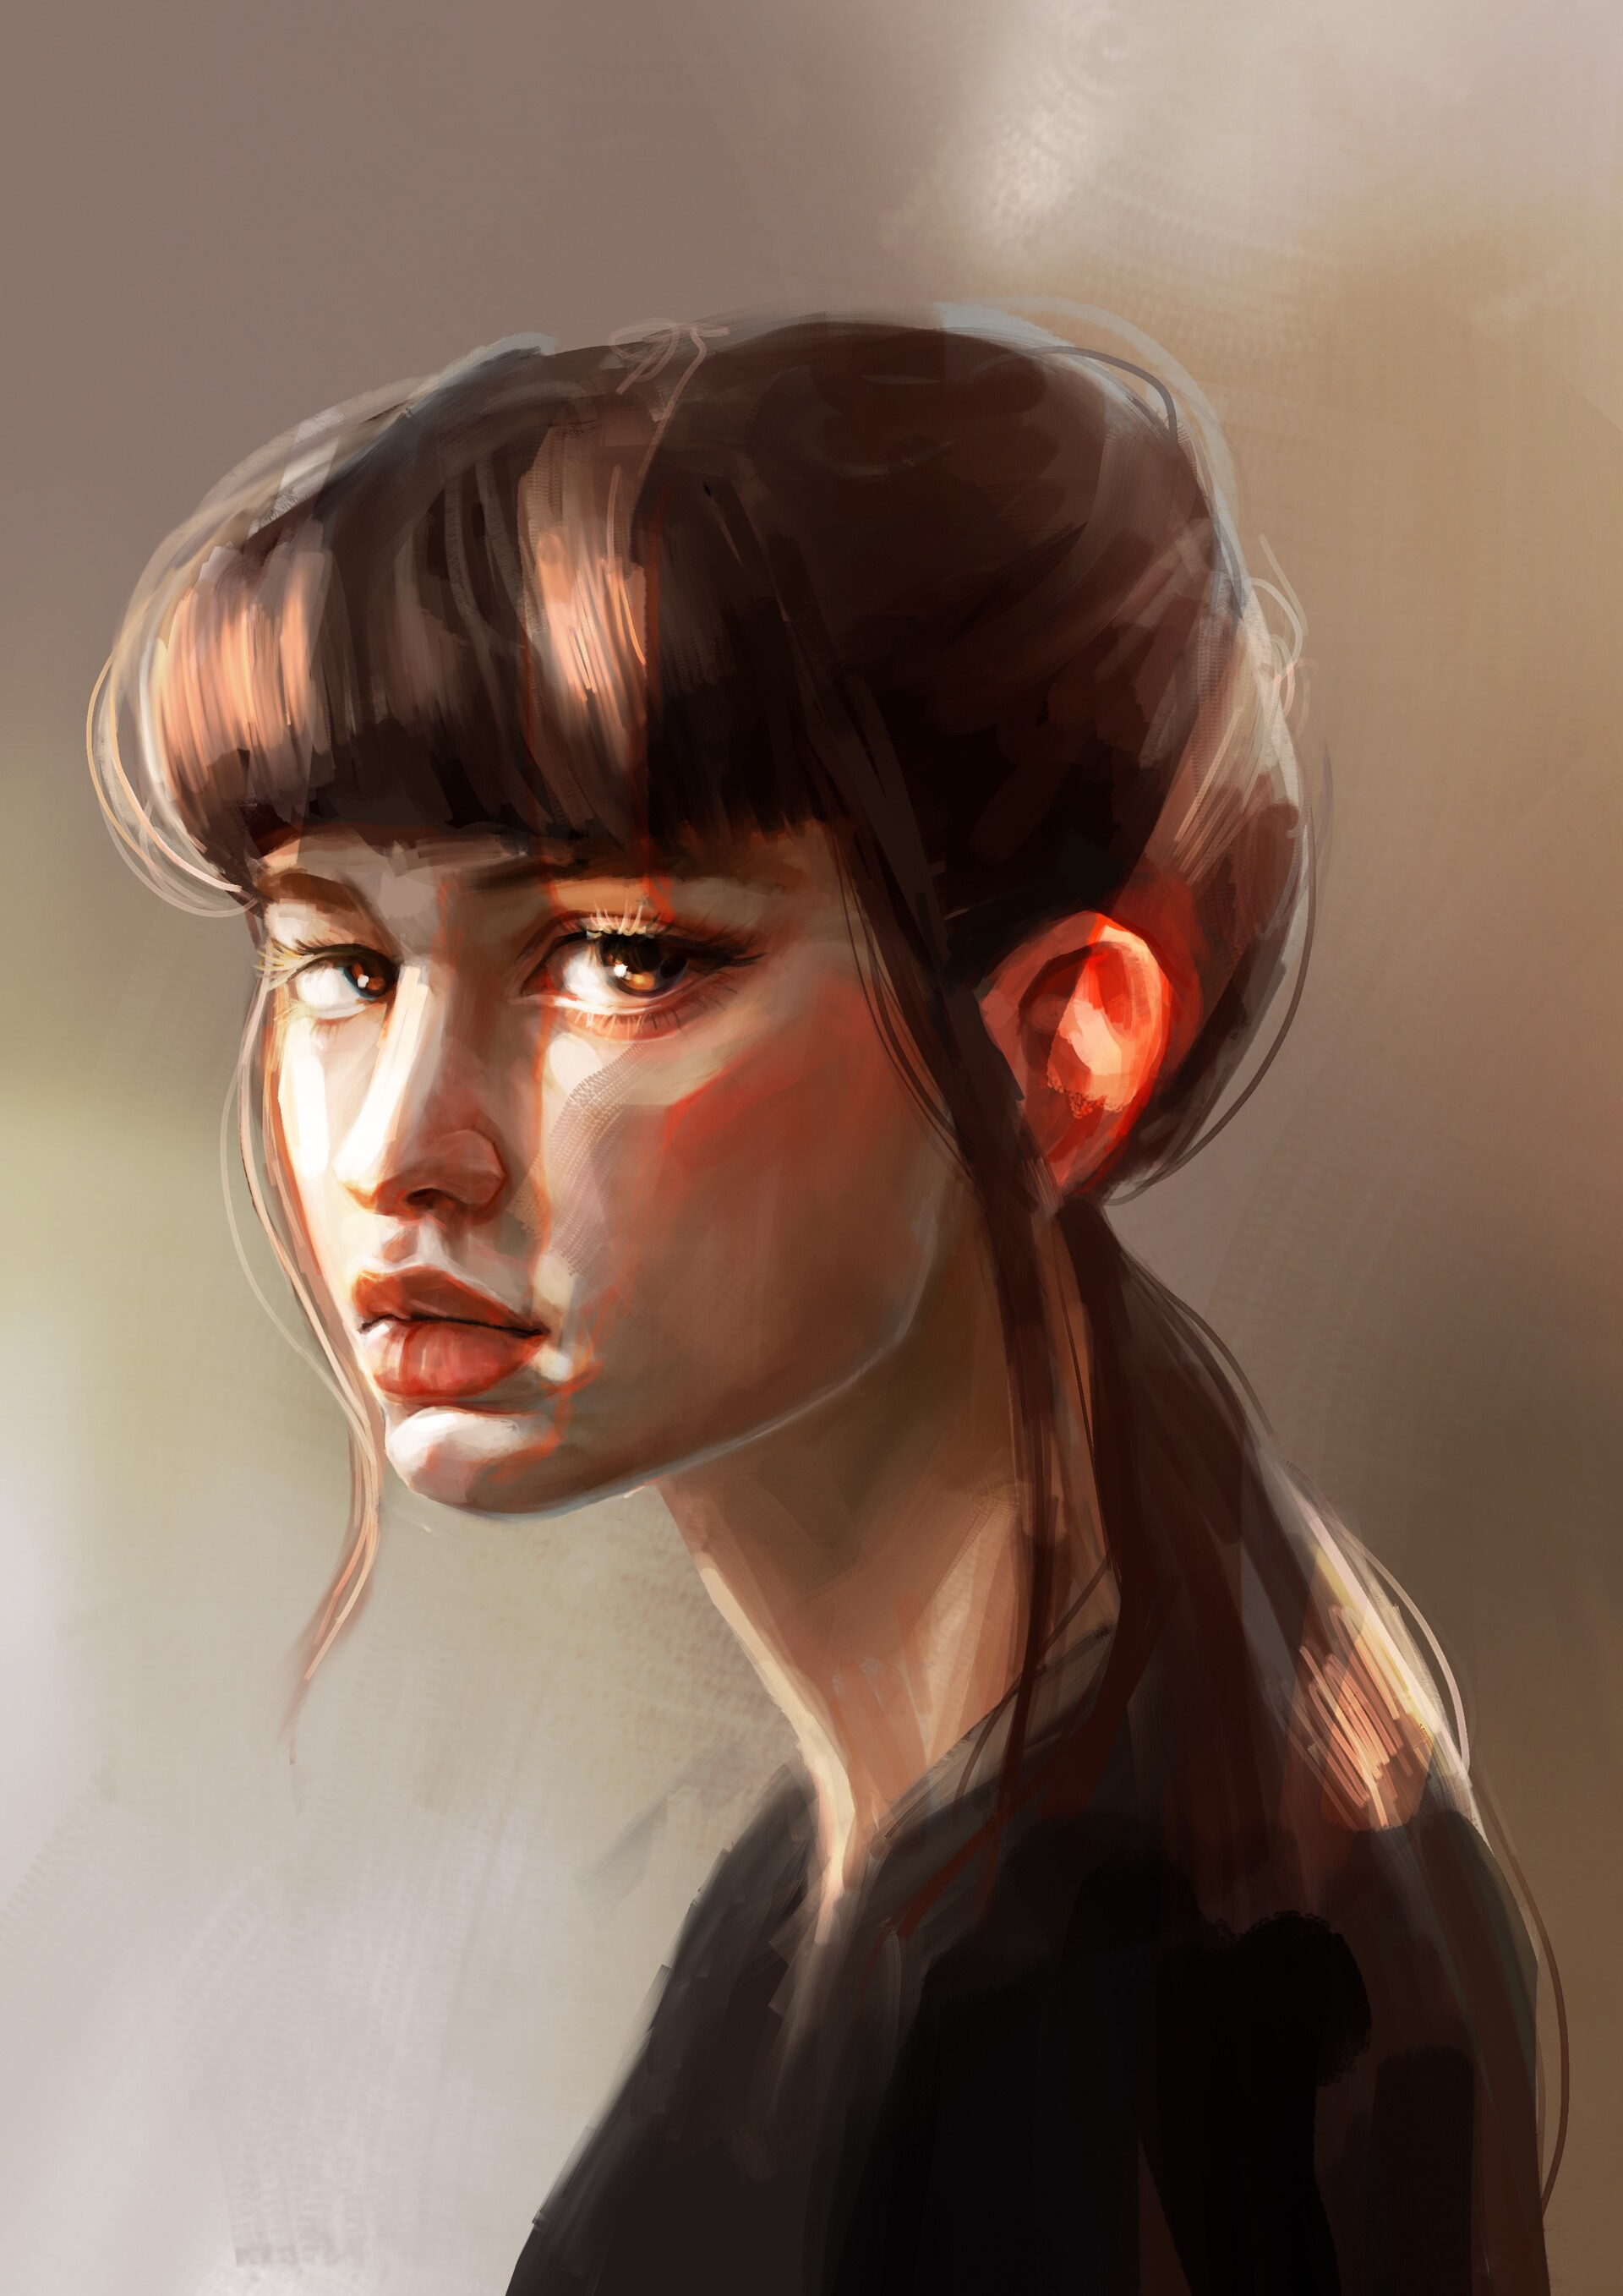 ArtStation - A portrait of a girl